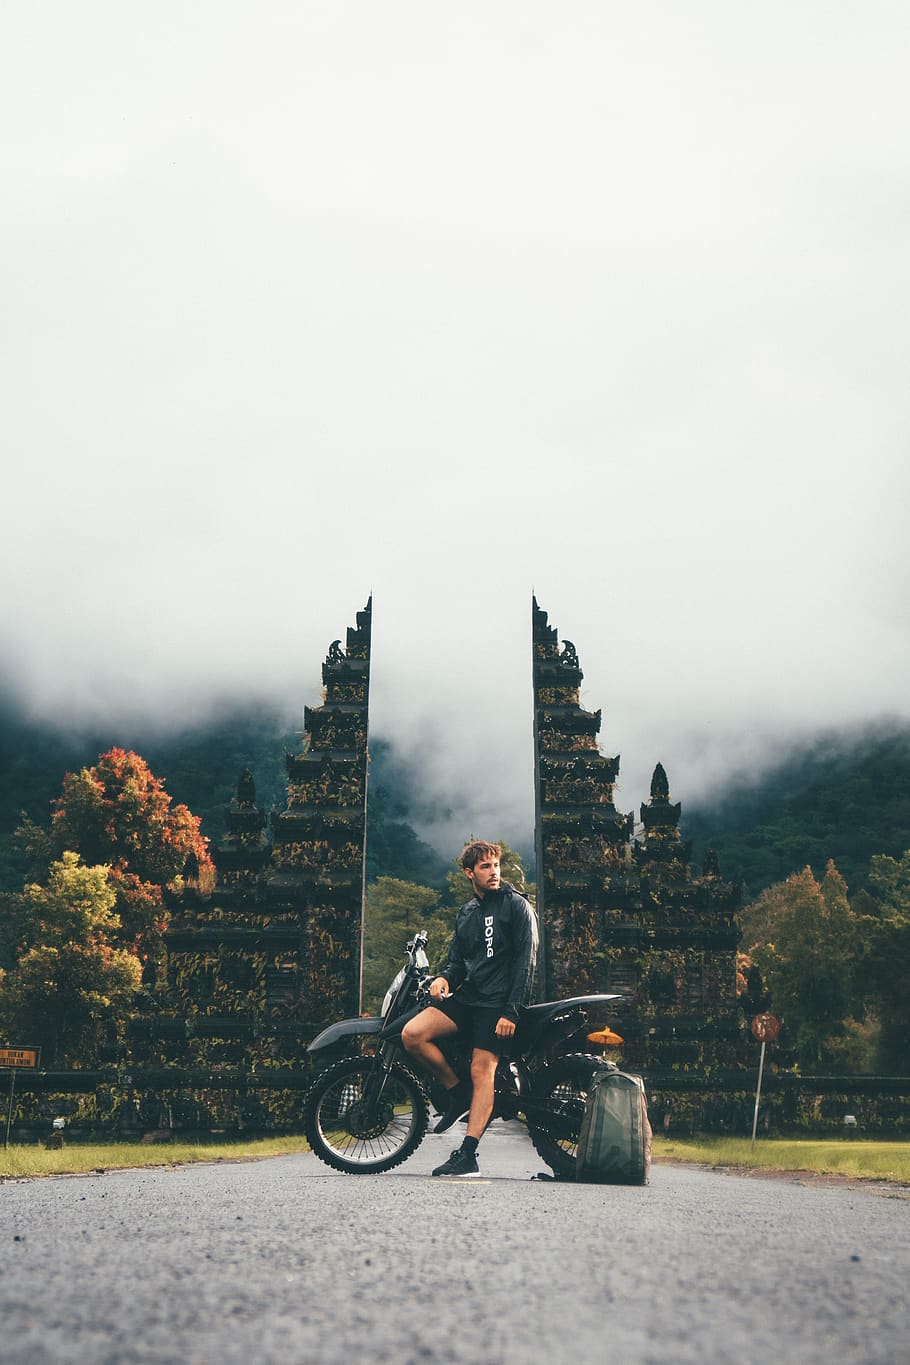 hombre, moto, aventura, niebla, ruinas, construcción, transporte, bicicleta, mochila, carretera